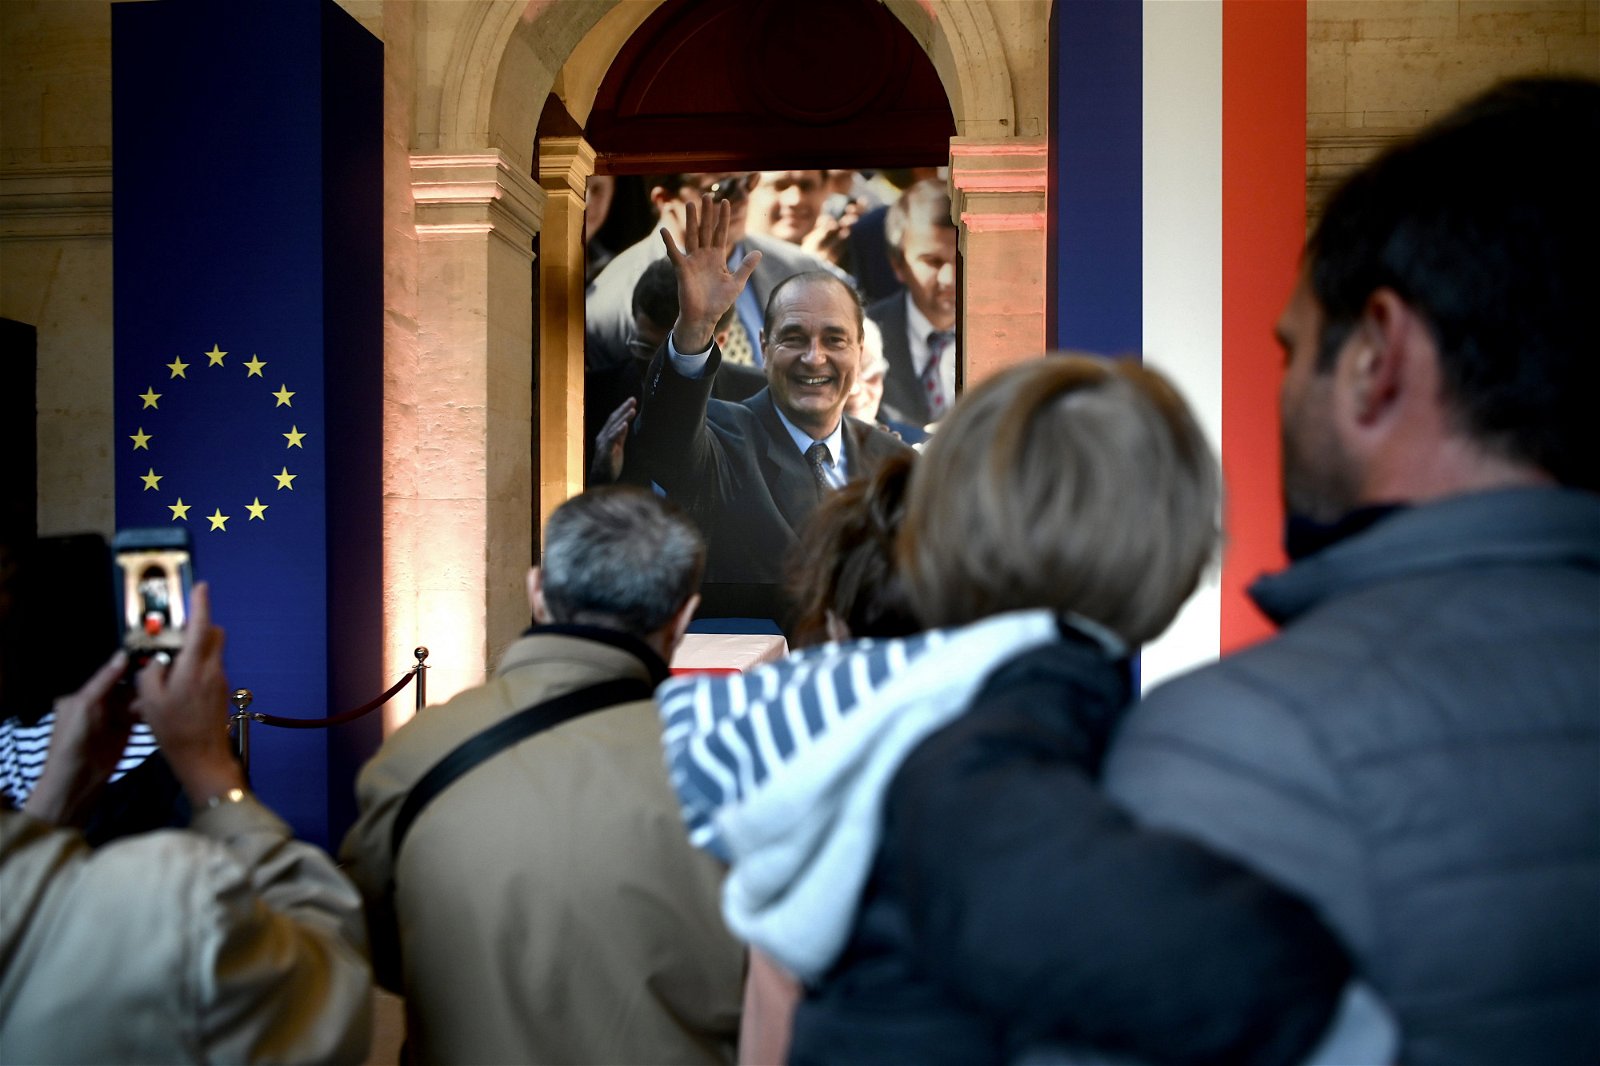 法国前总统希拉克向人们挥手微笑的大幅照片，悬挂在灵柩上方，灵柩两侧亦放置著欧盟旗帜以及法国国旗。有前来瞻仰遗容的民众，朝著希拉克的照片拍照留念。